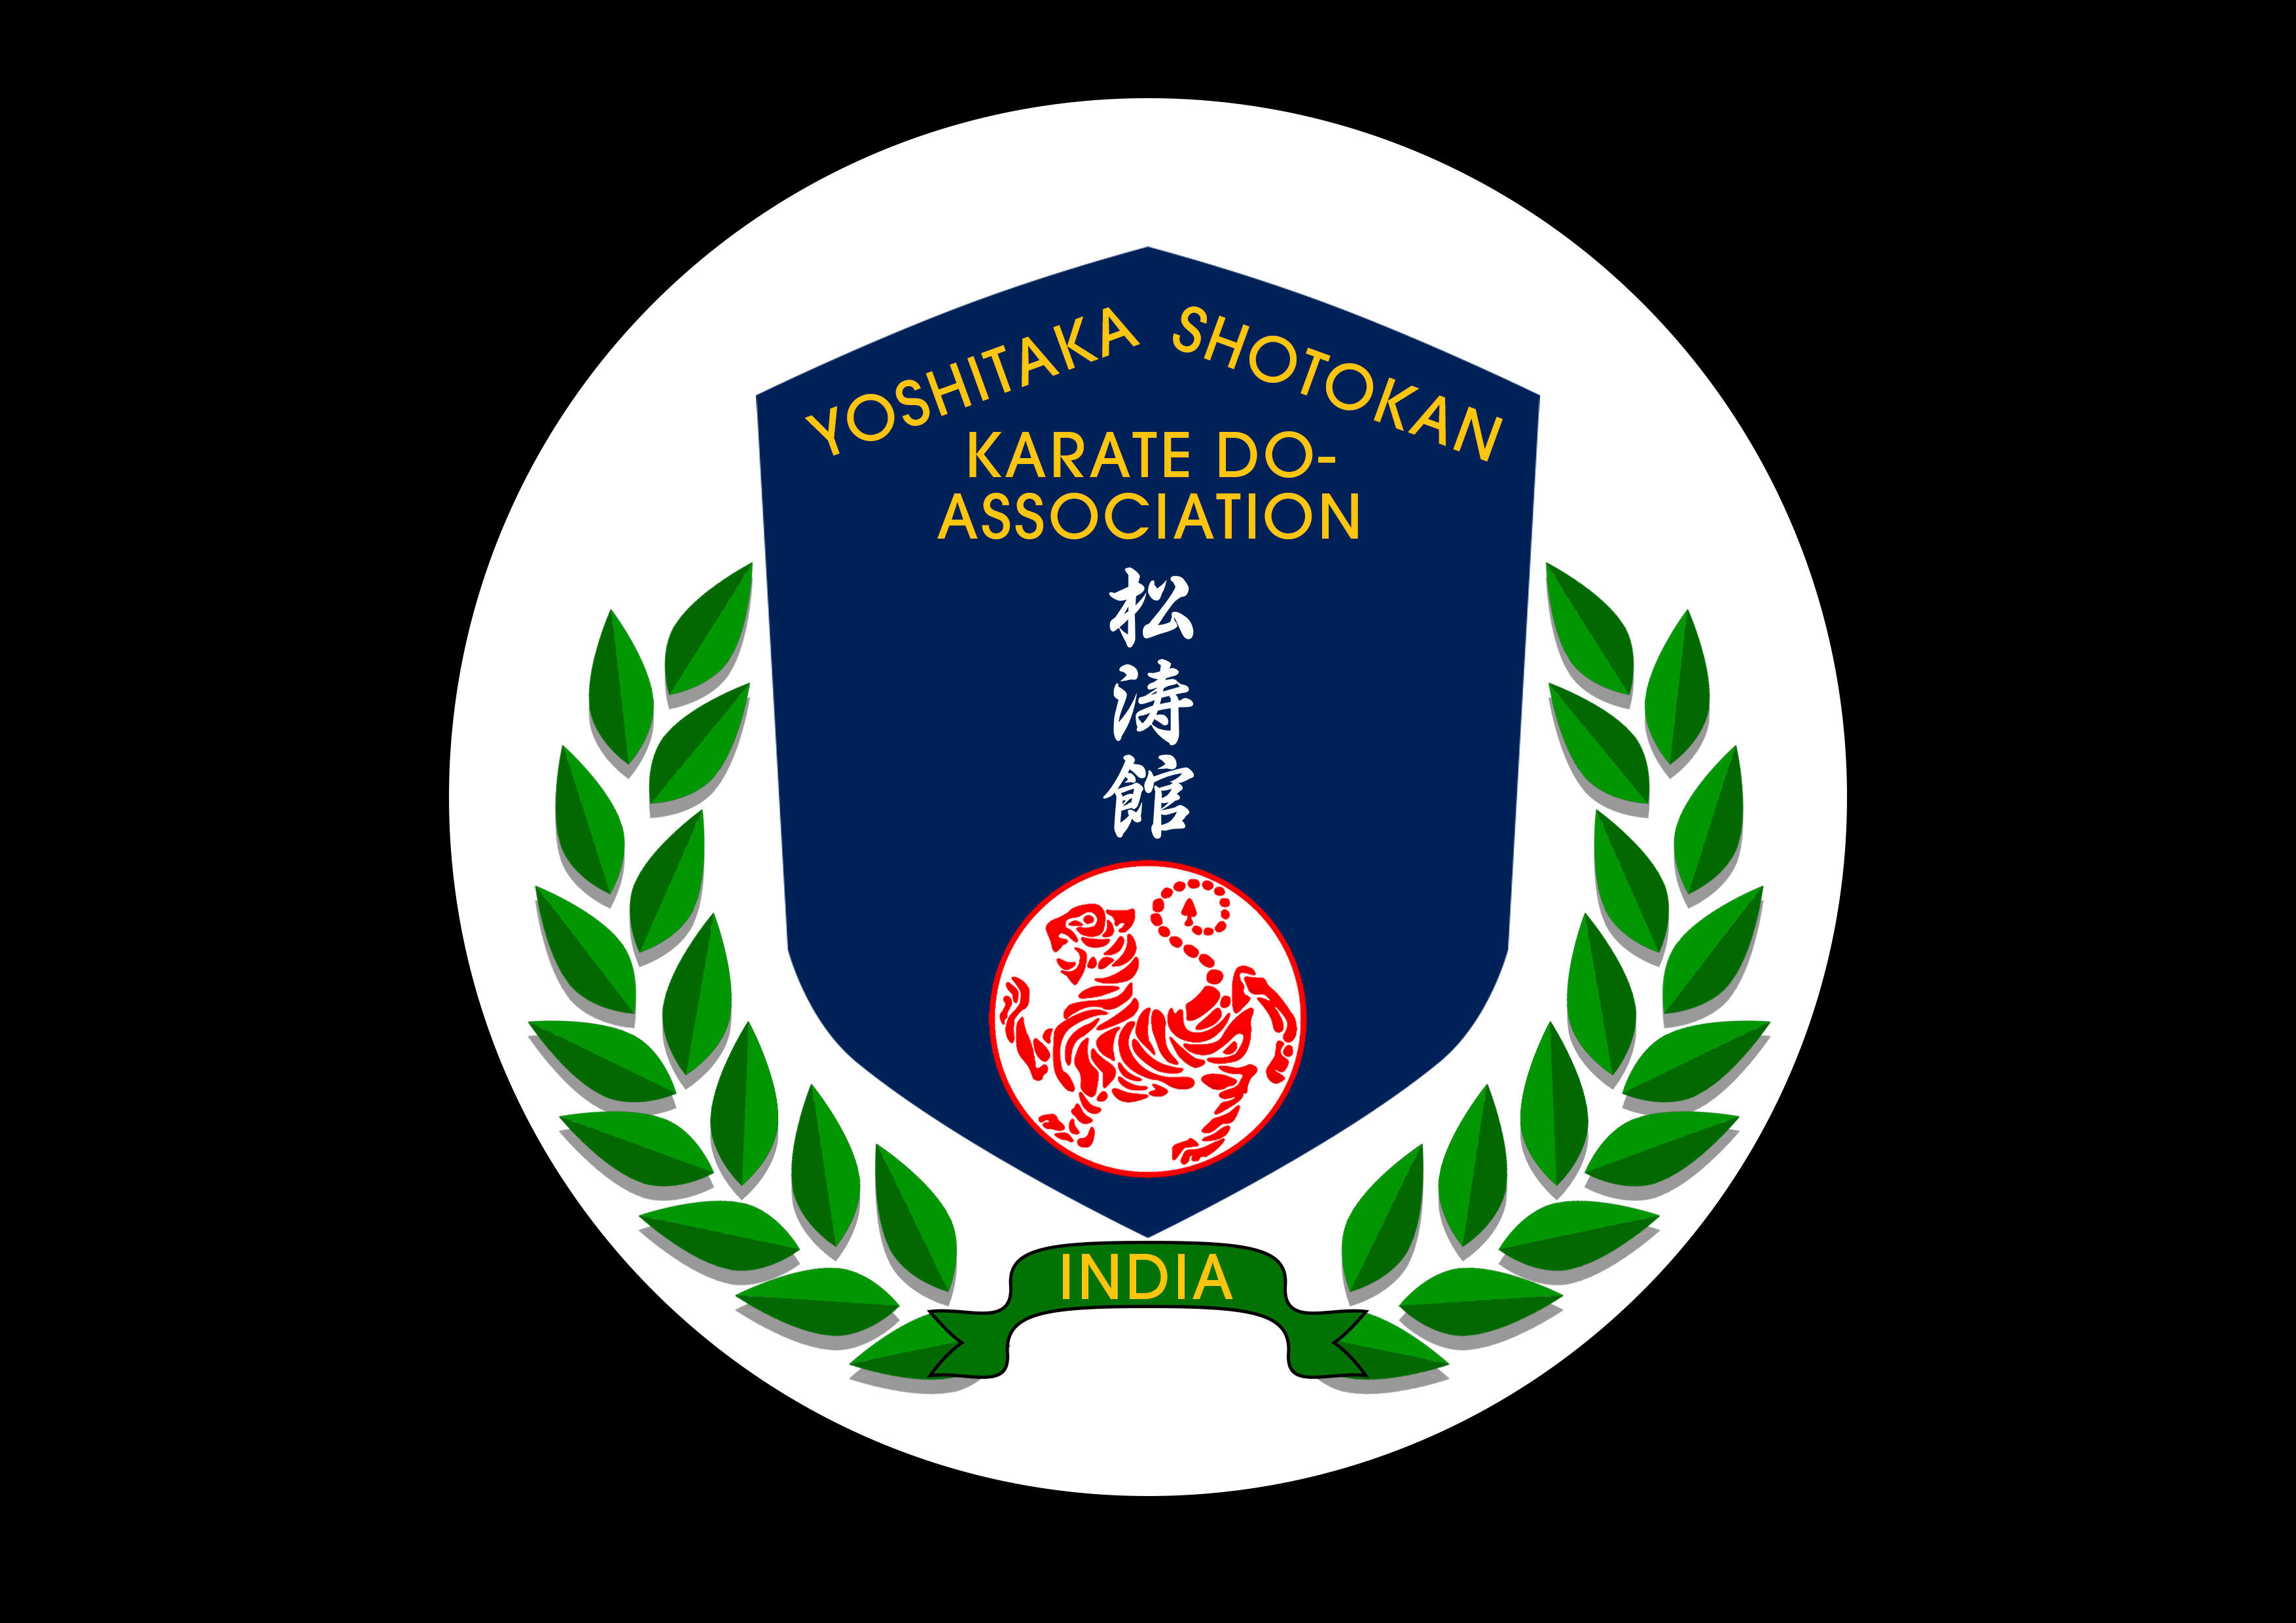 Yoshitaka Shotokan Karate Do Association